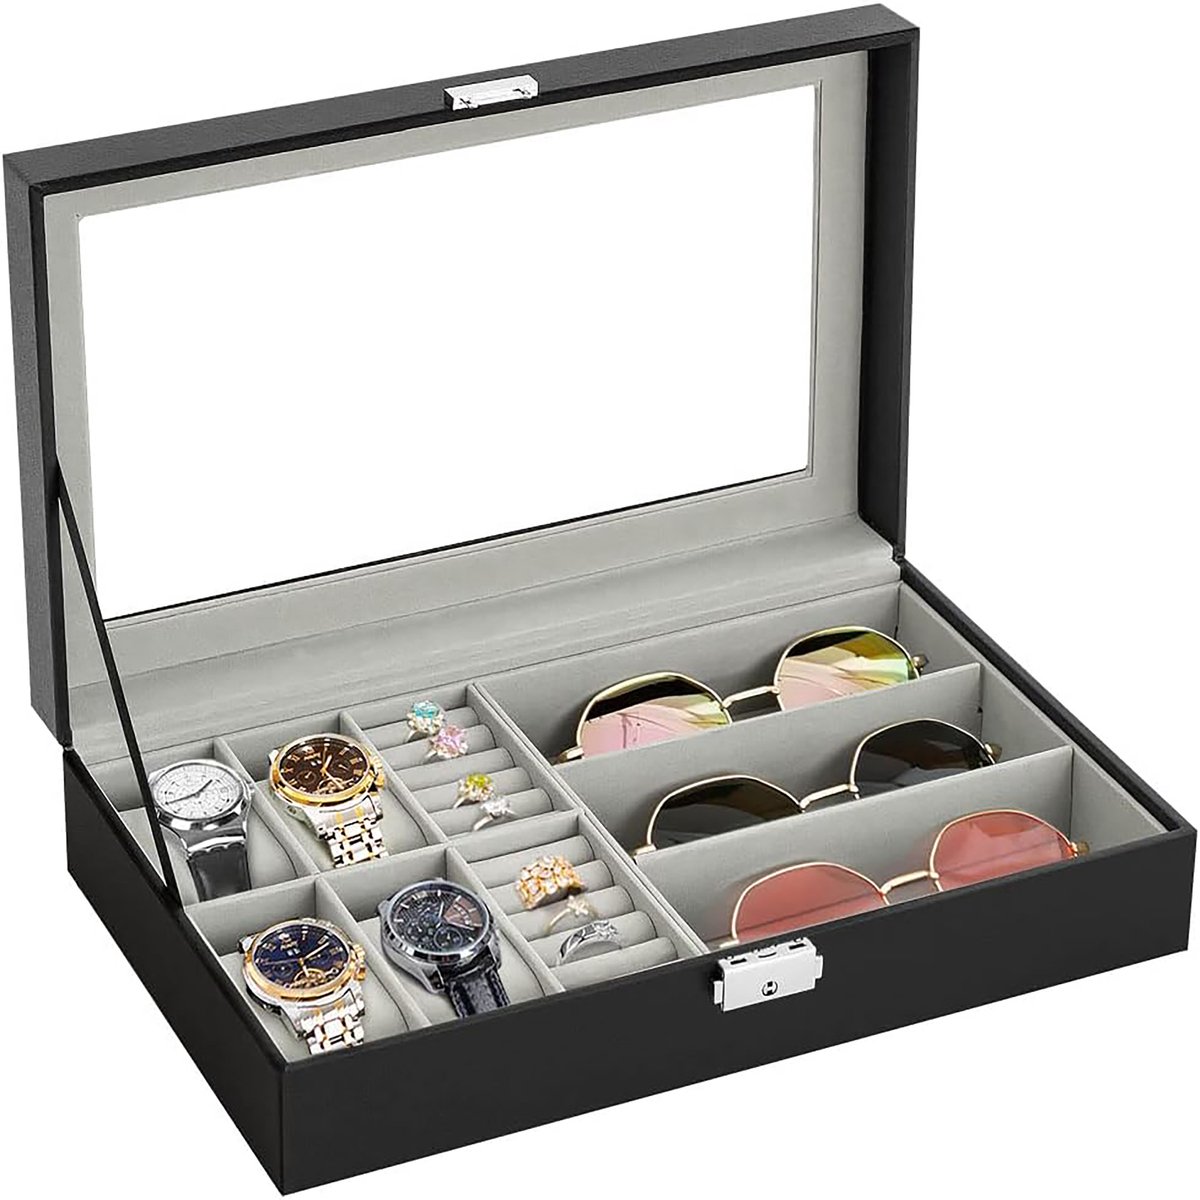 YONO Opbergbox voor Horloges - Brillen - Sieraden - Horloge Box - Zonnebrillen Doos - Organizer - Zwart